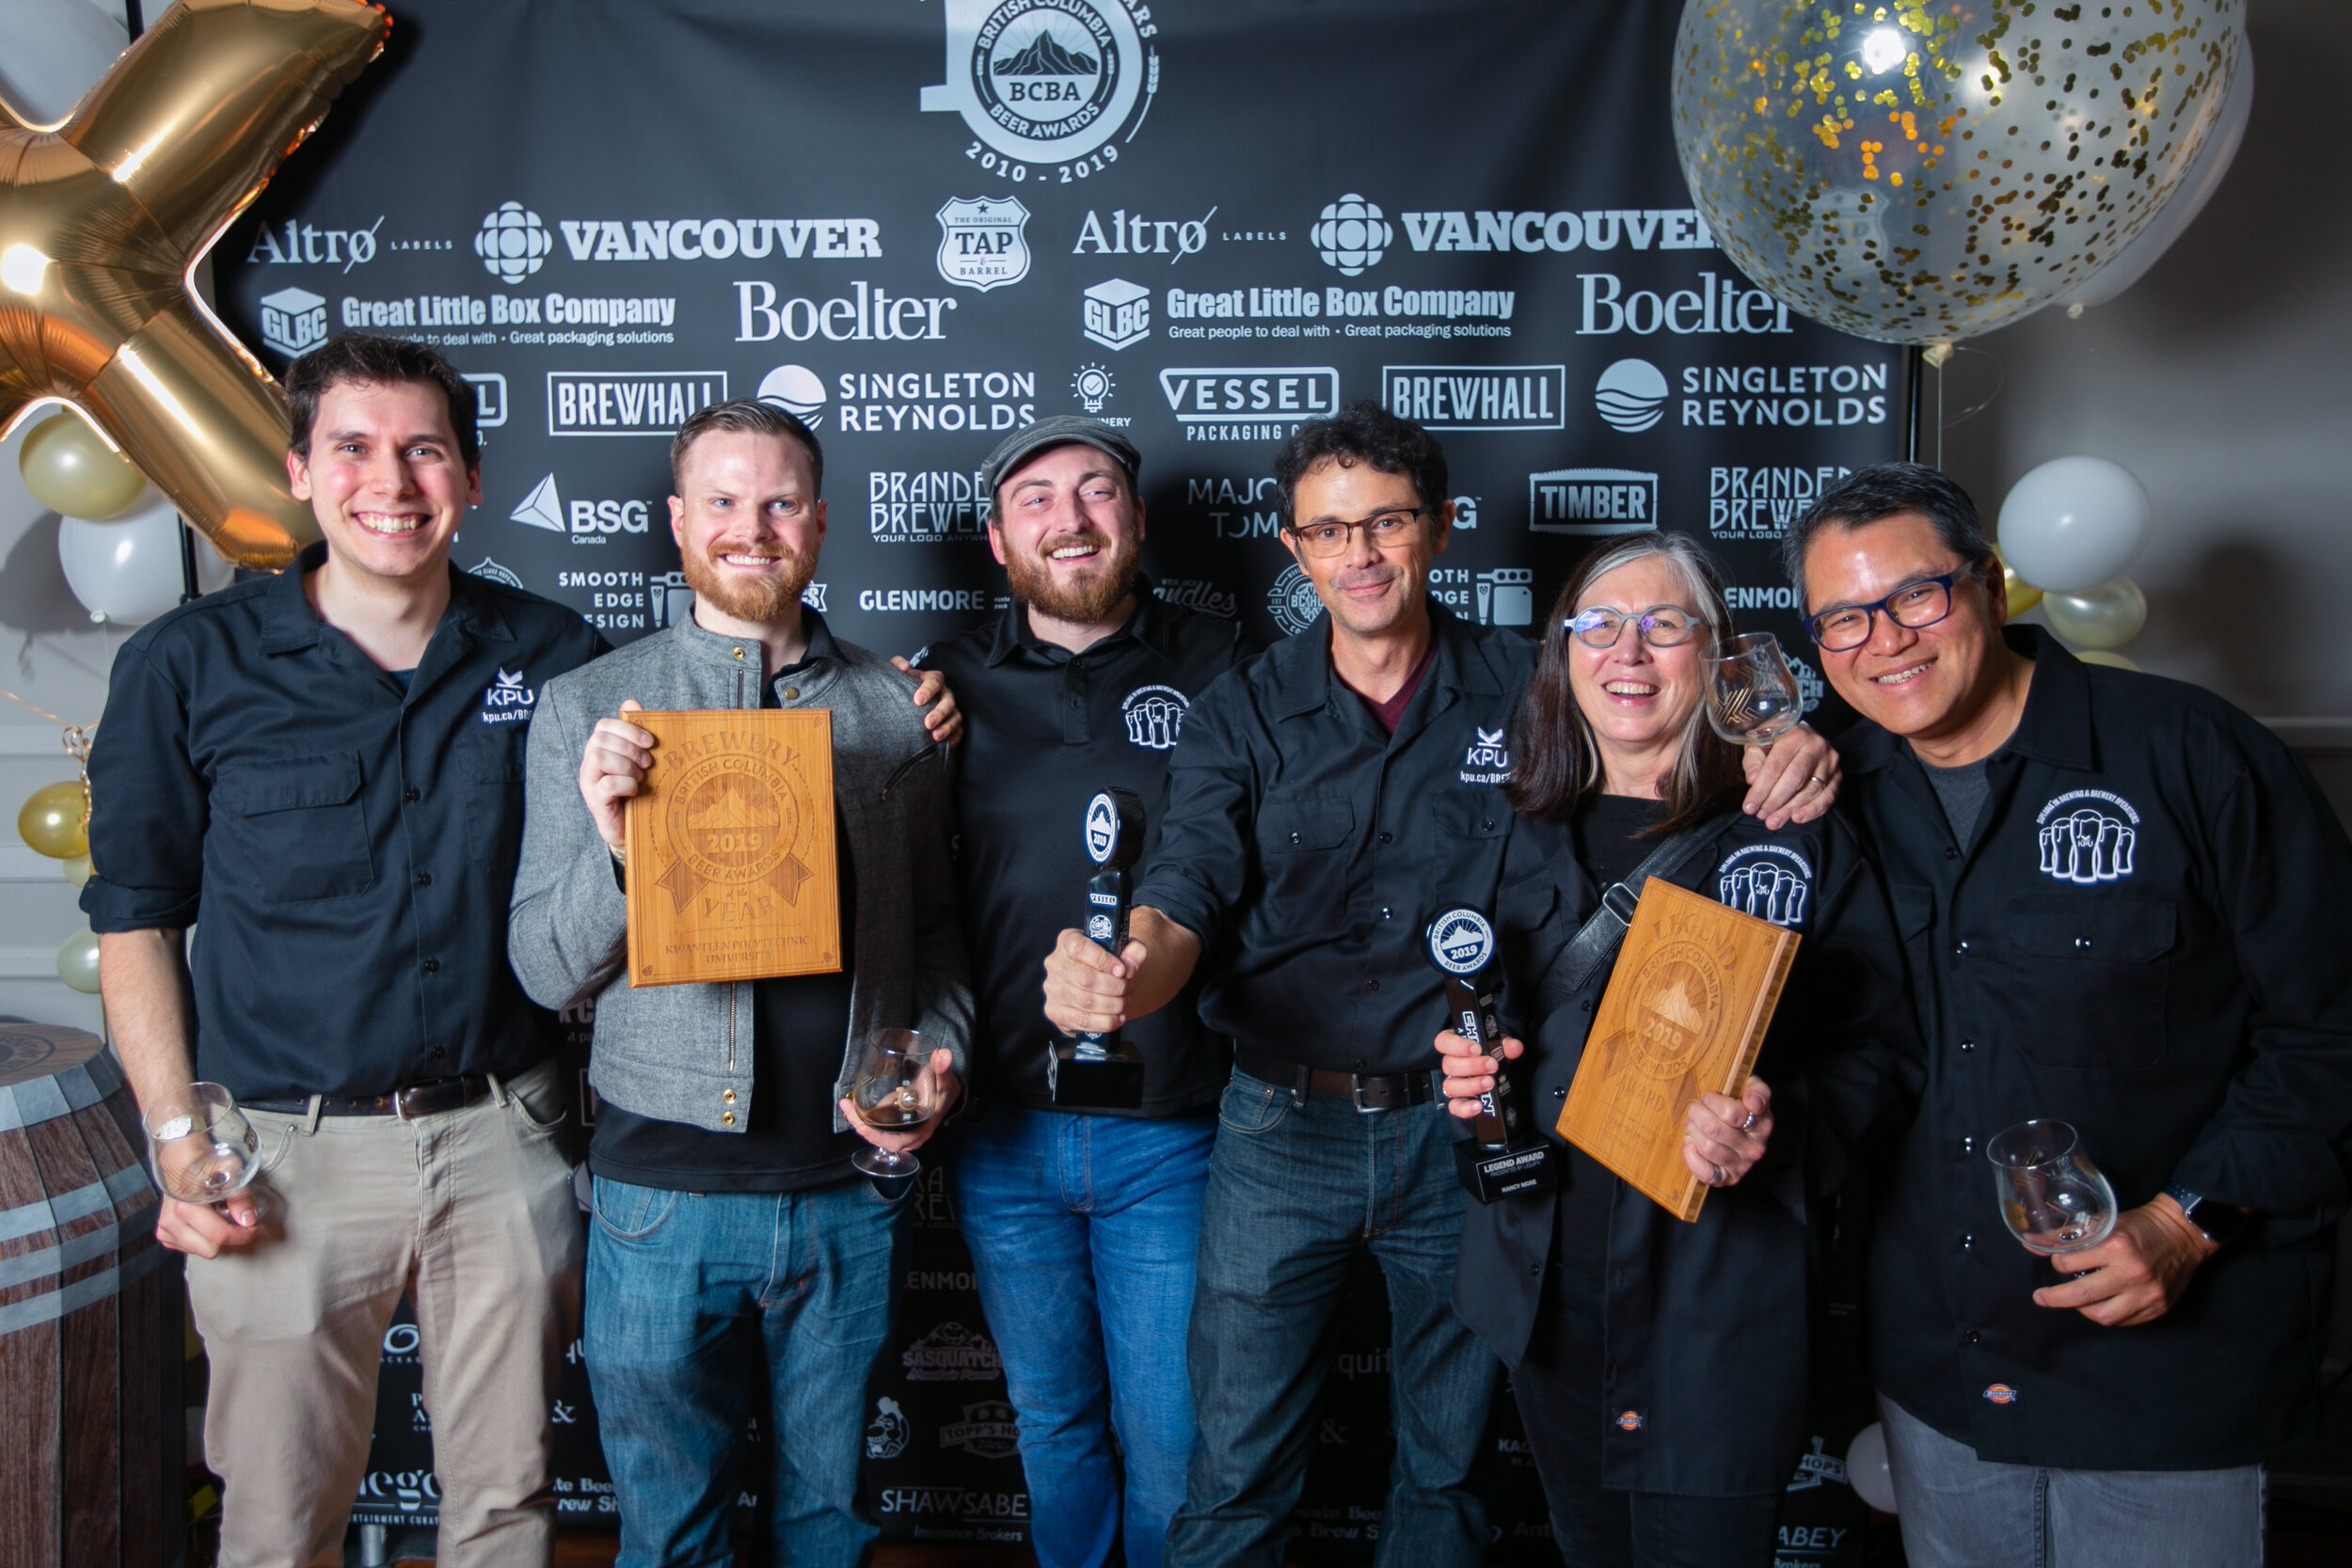 KPU Brewing, Brewery of the Year, brewing school, beer school, BC Beer Awards